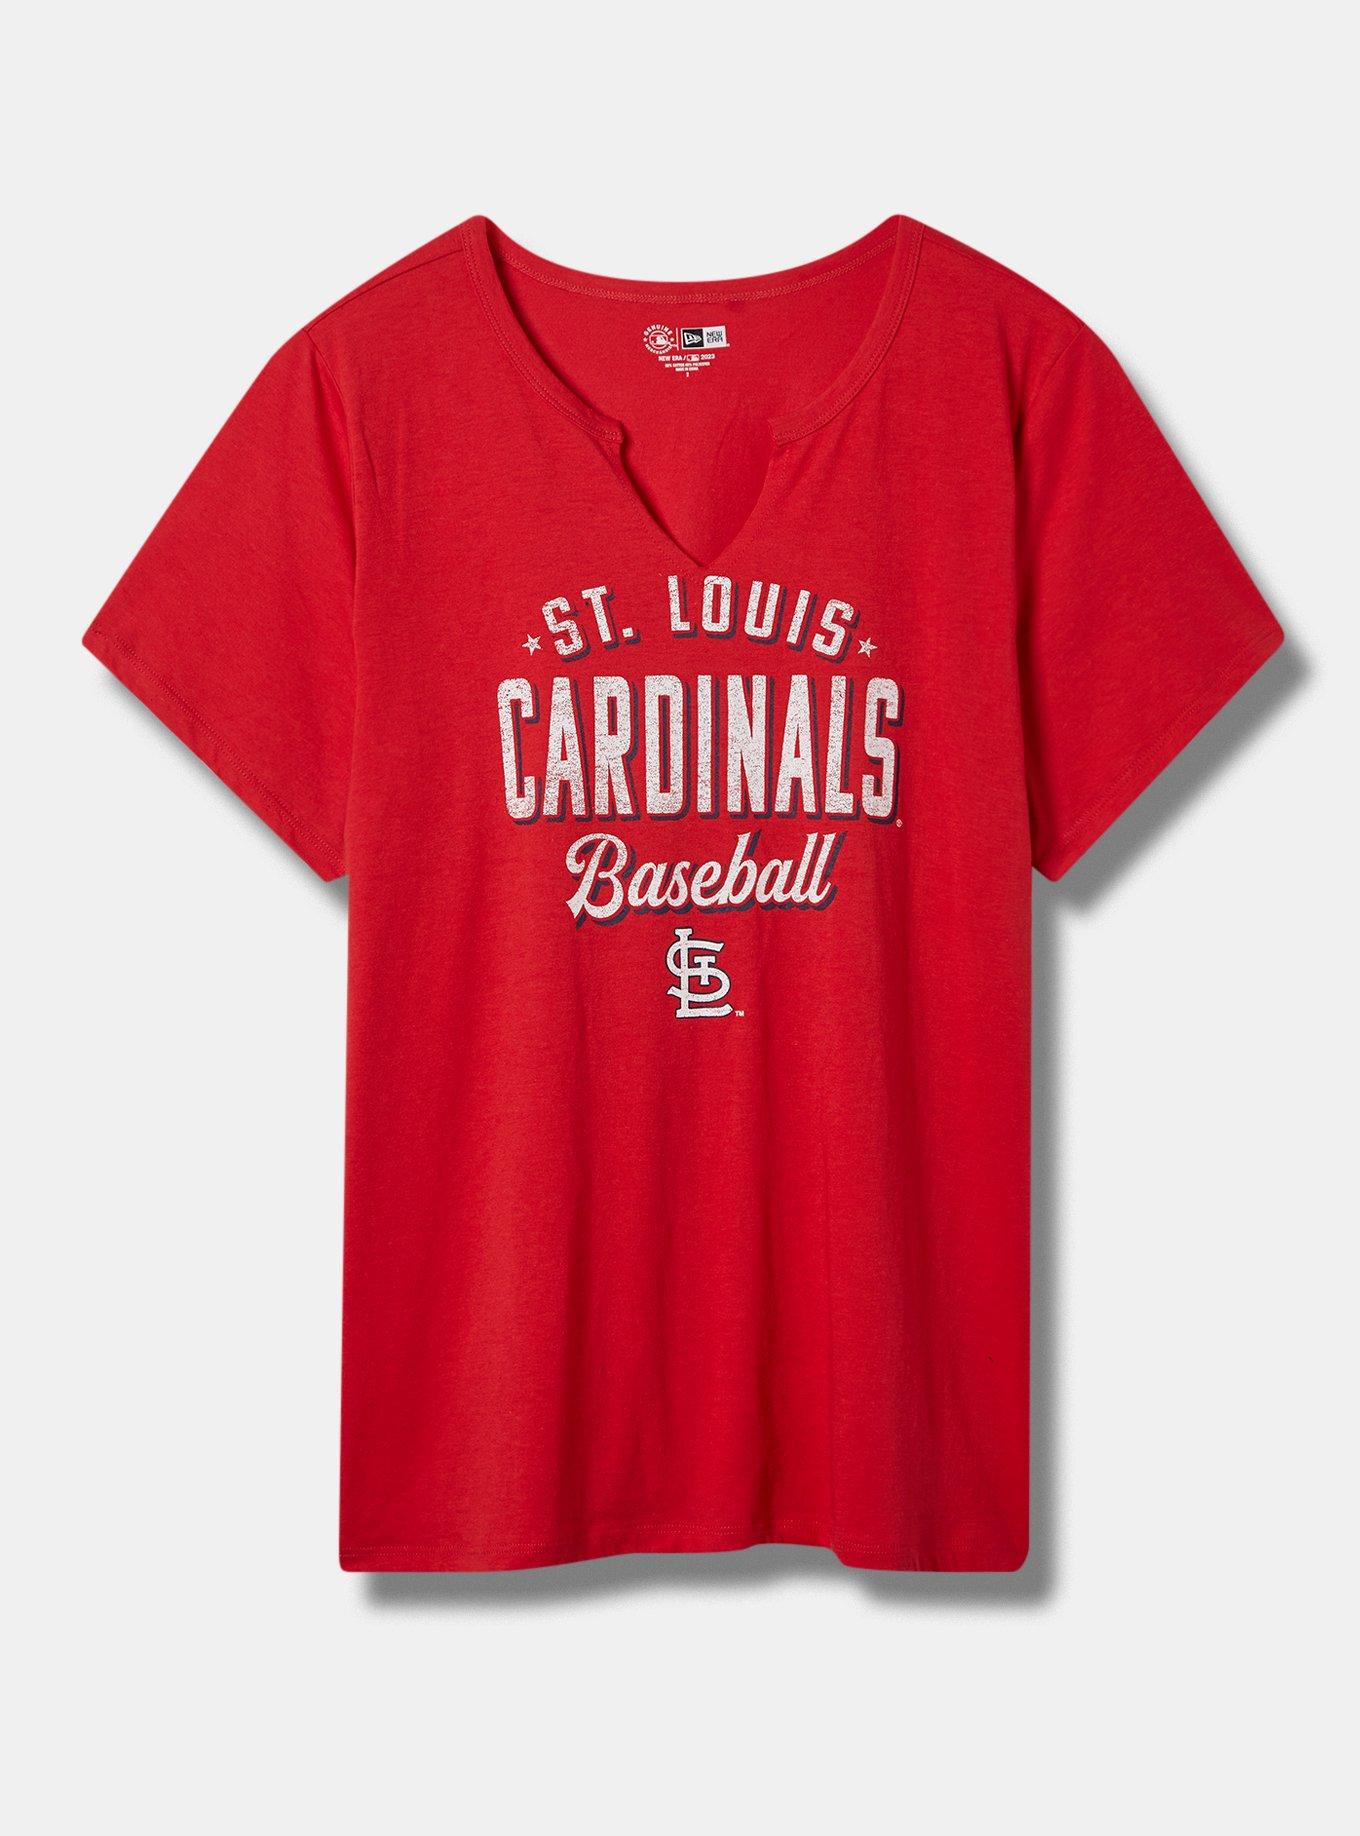 plus size cardinals shirts